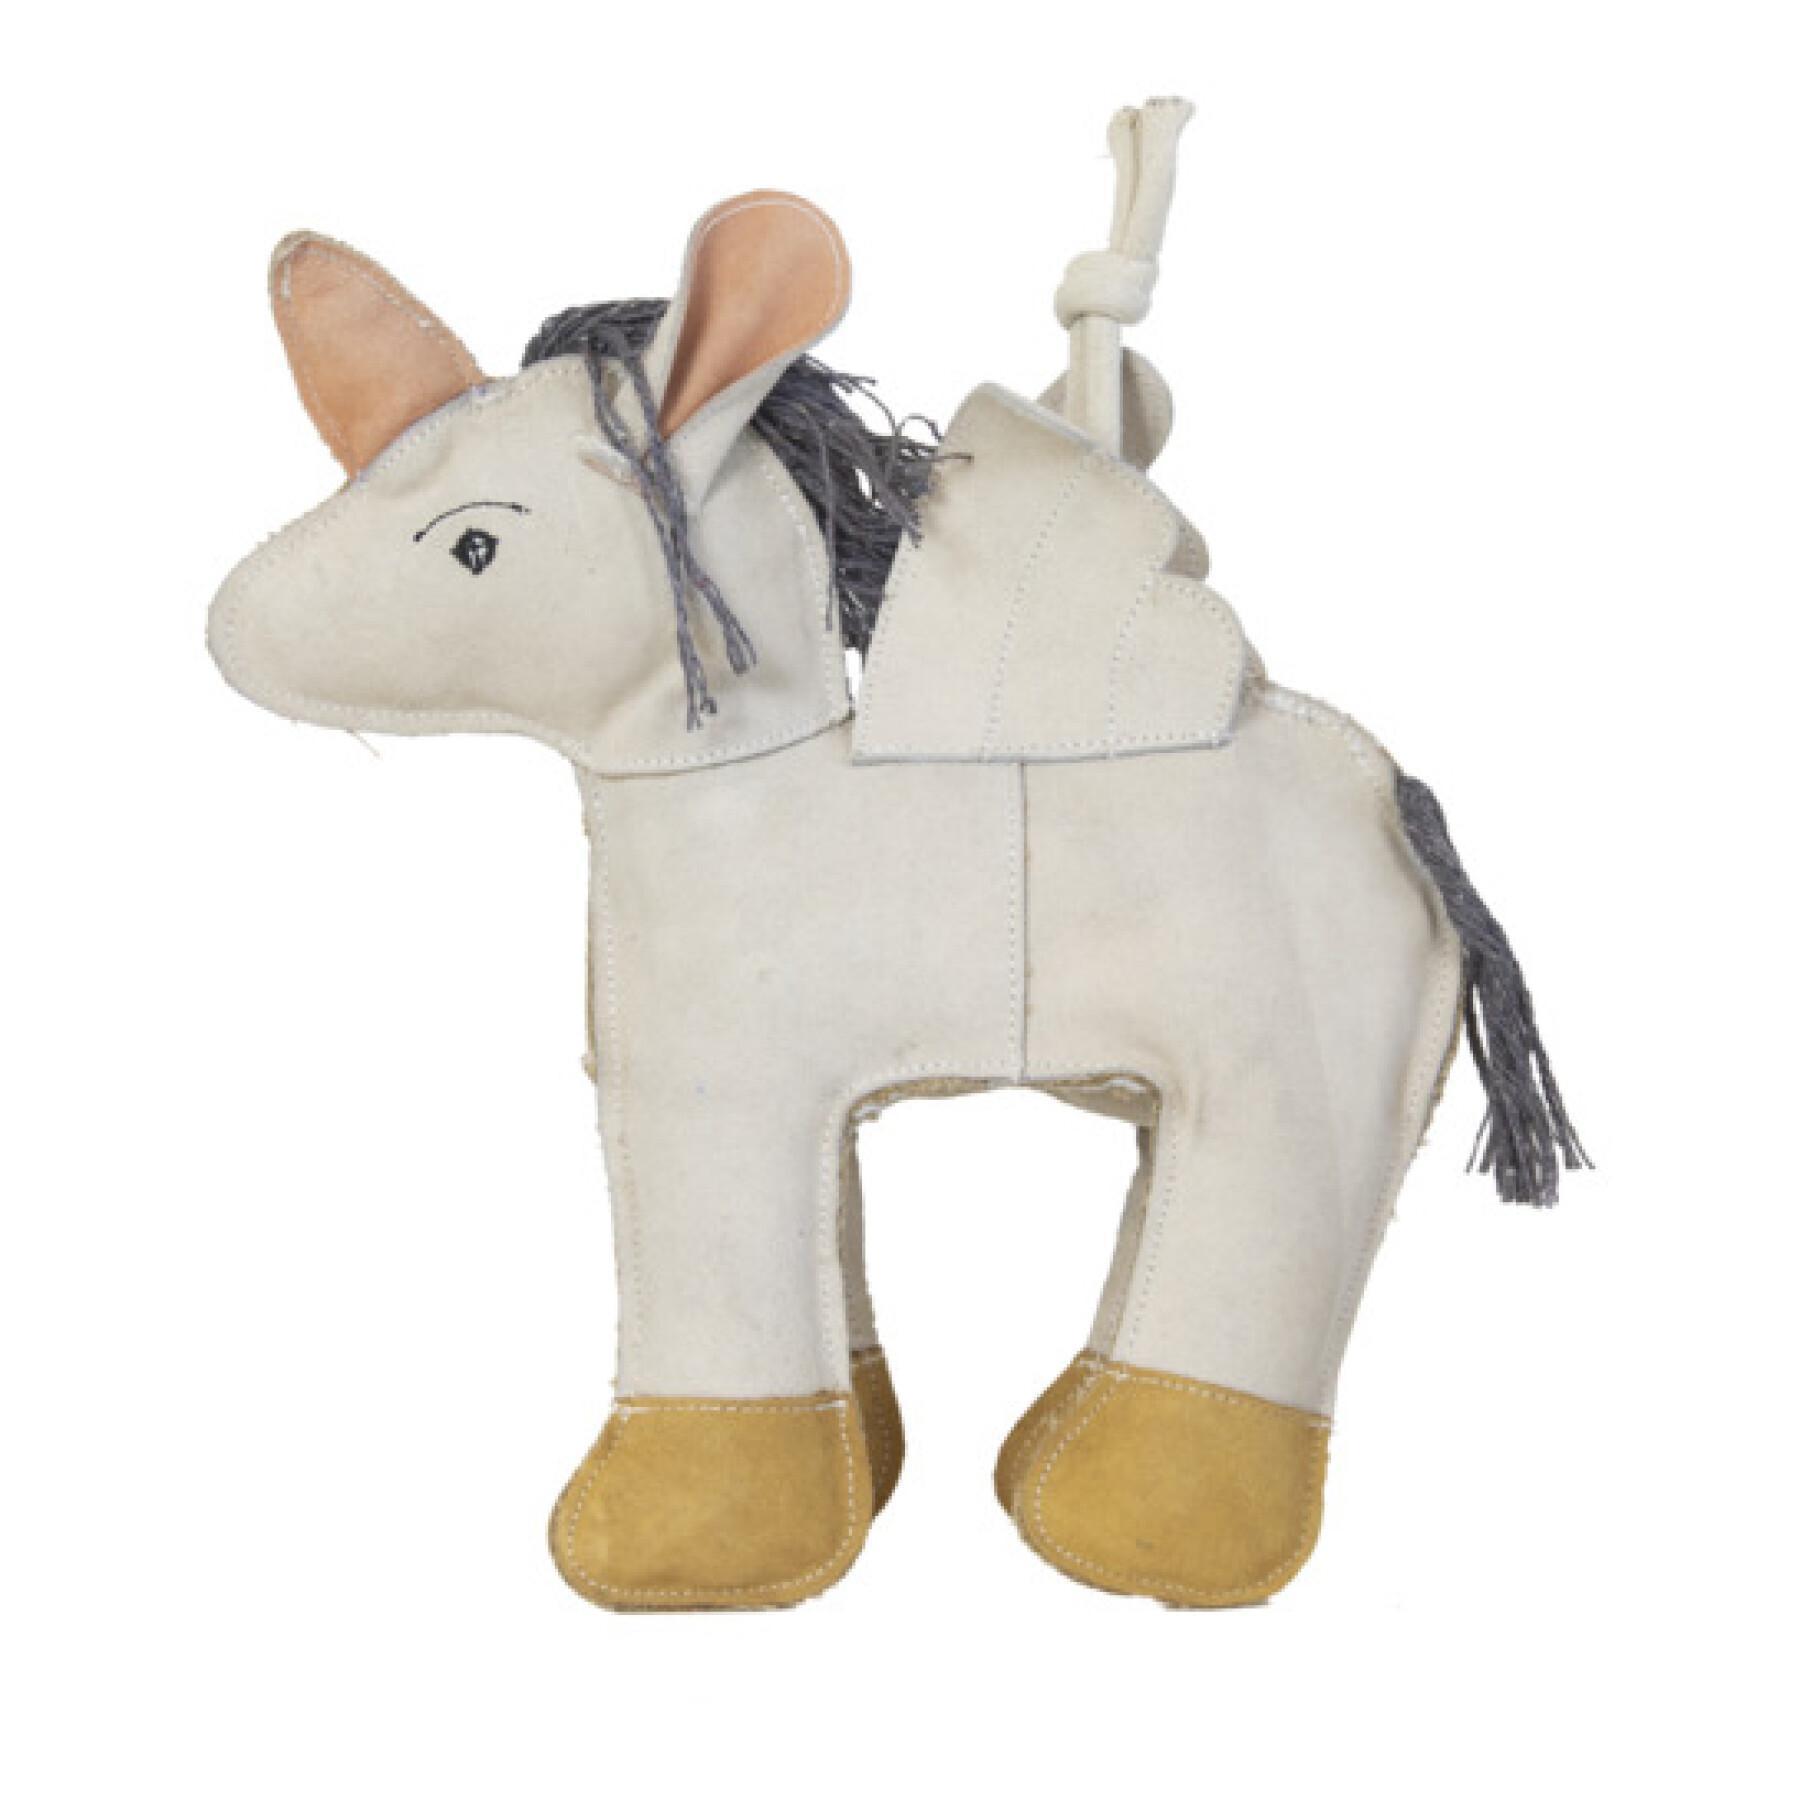 Relaxing unicorn horse toy Kentucky